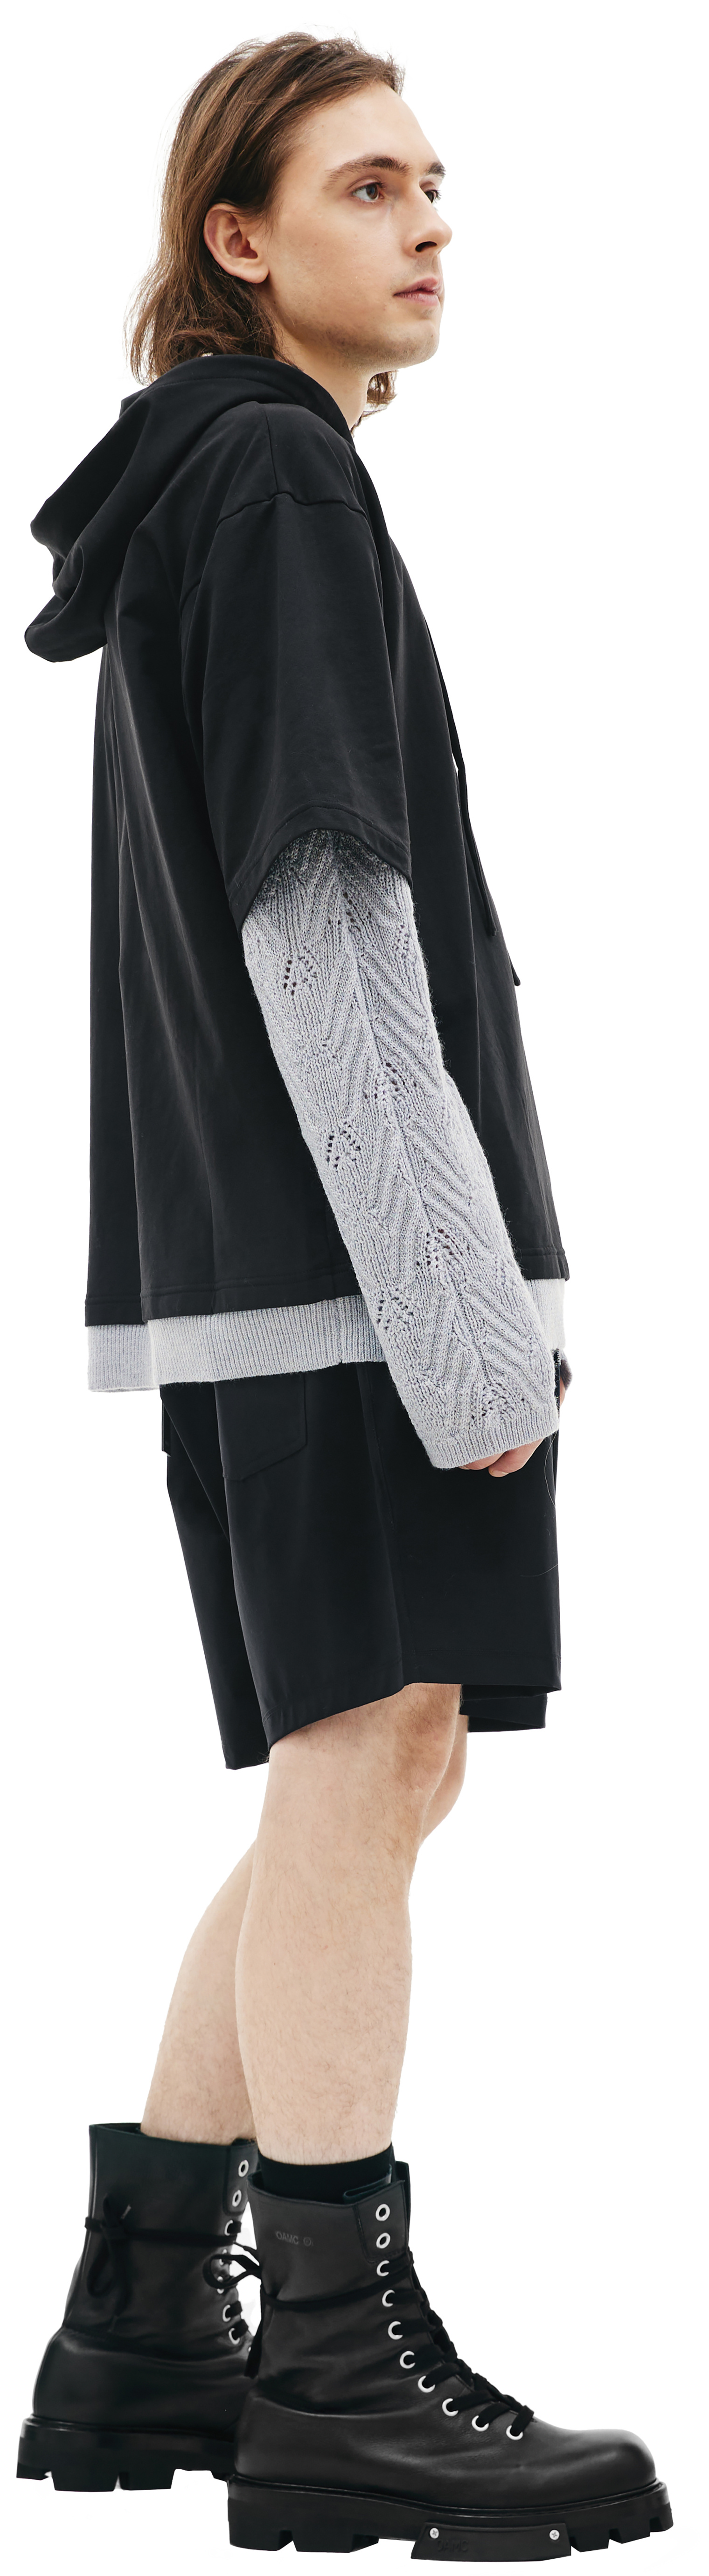 Nahmias Hoodie with knit sleeves